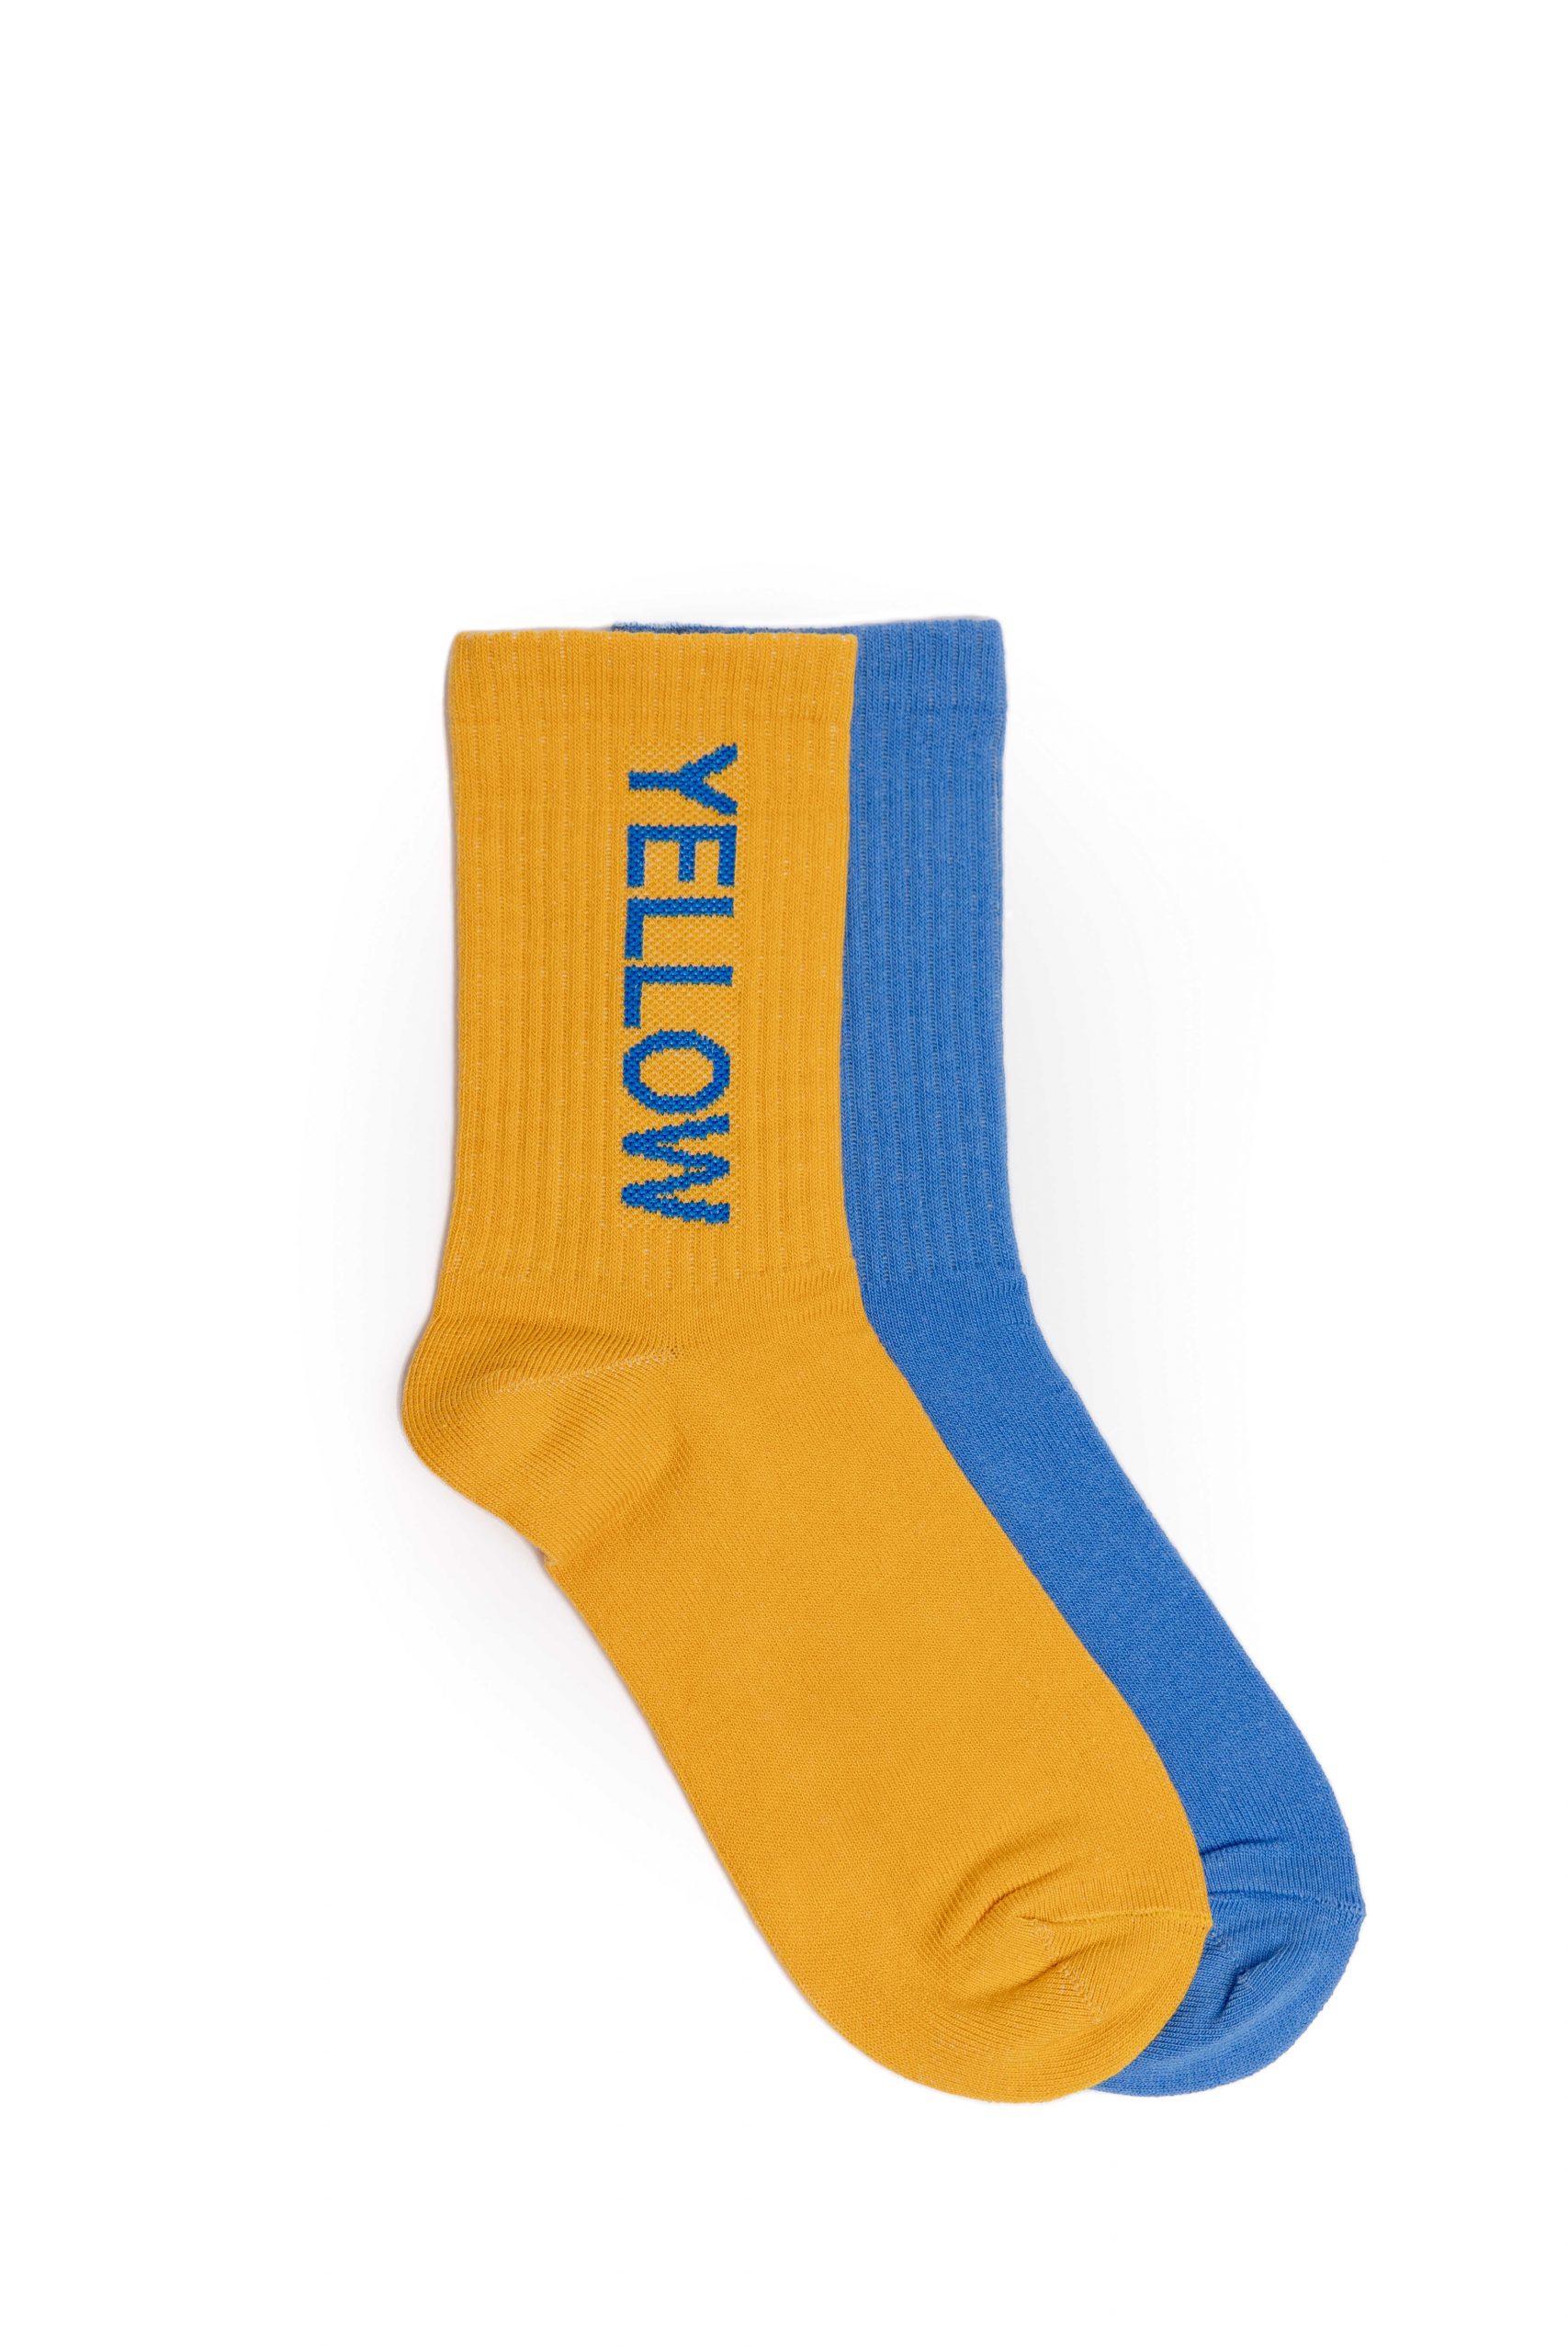 Шкарпетки Yellowblue. Колір блакитний. 2.